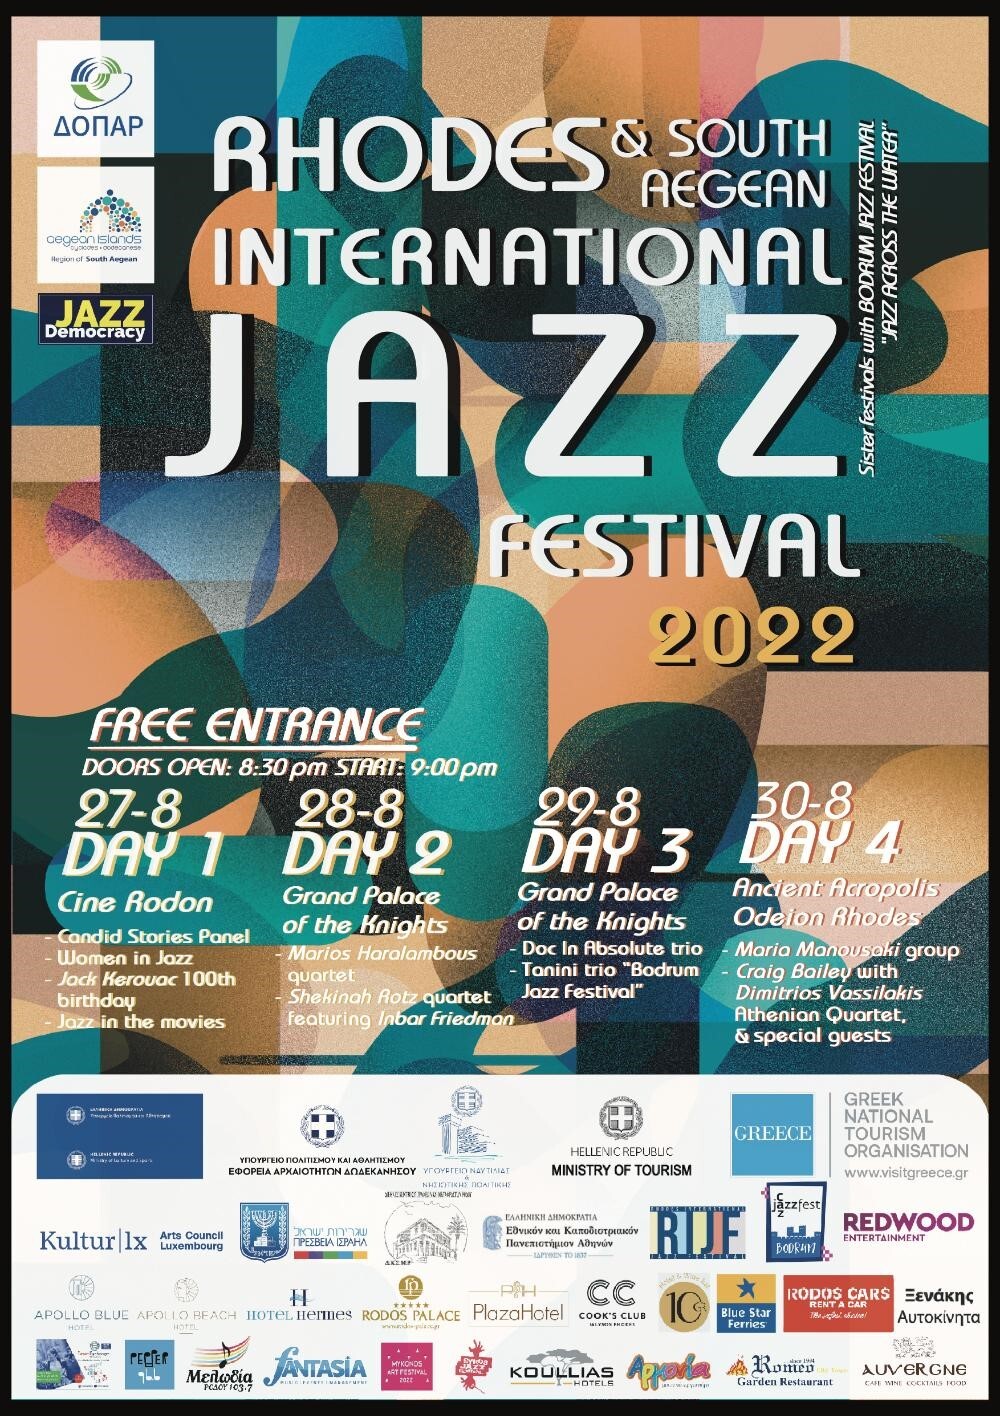 Διεθνές Φεστιβάλ Τζαζ | Ρόδος, 27-30 Αυγούστου (Rhodes & South Aegean International Jazz Festival 2022)